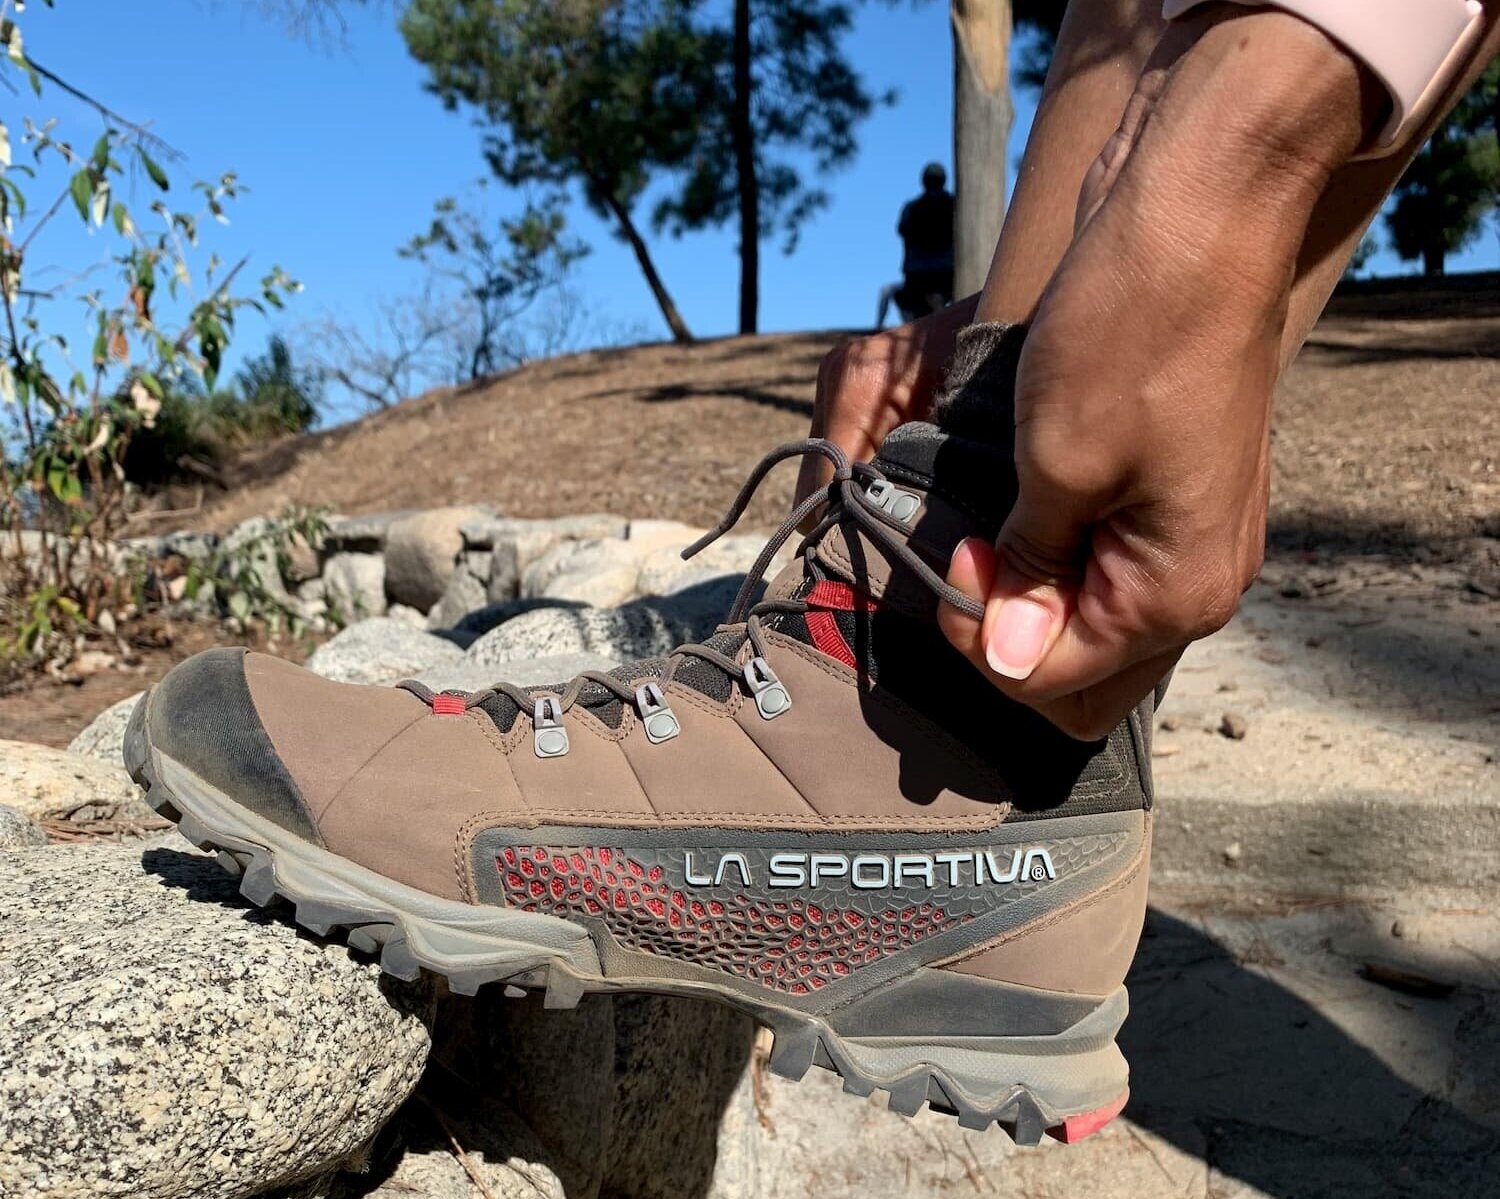 lightweight high top hiking boots